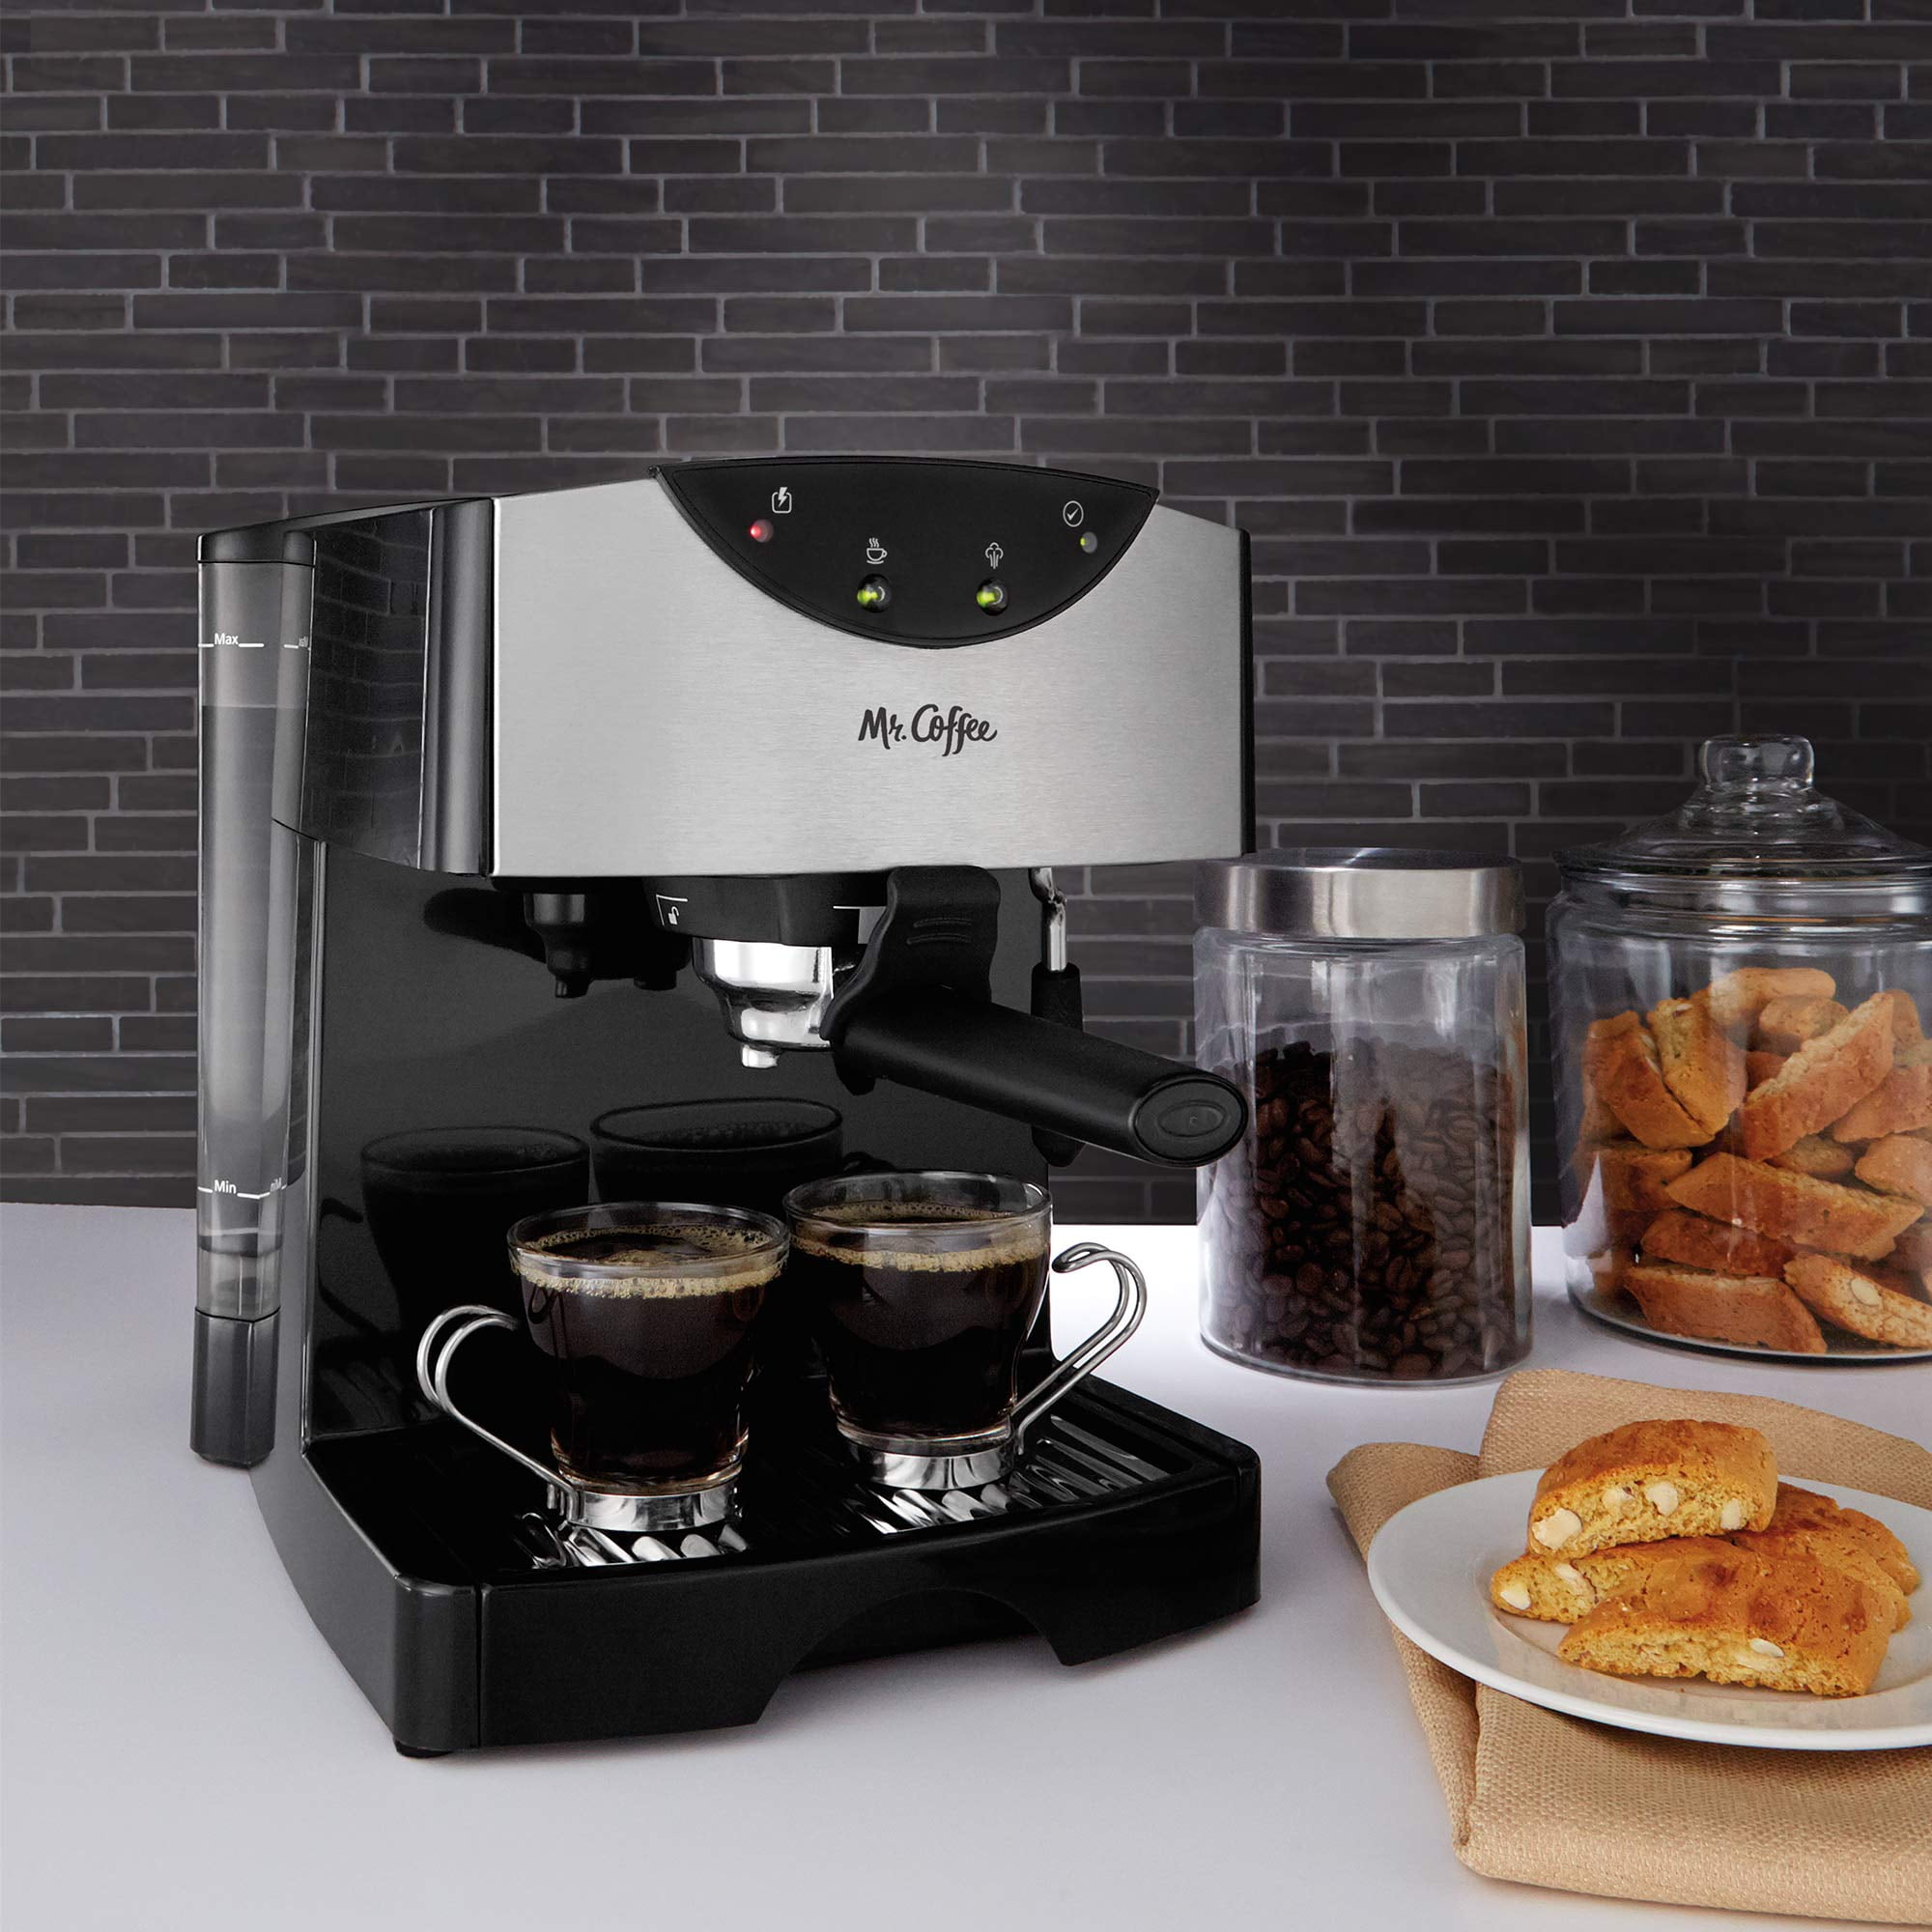 Mr. Coffee Espresso Machine & Coffeemaker Combo for Sale in Pinole